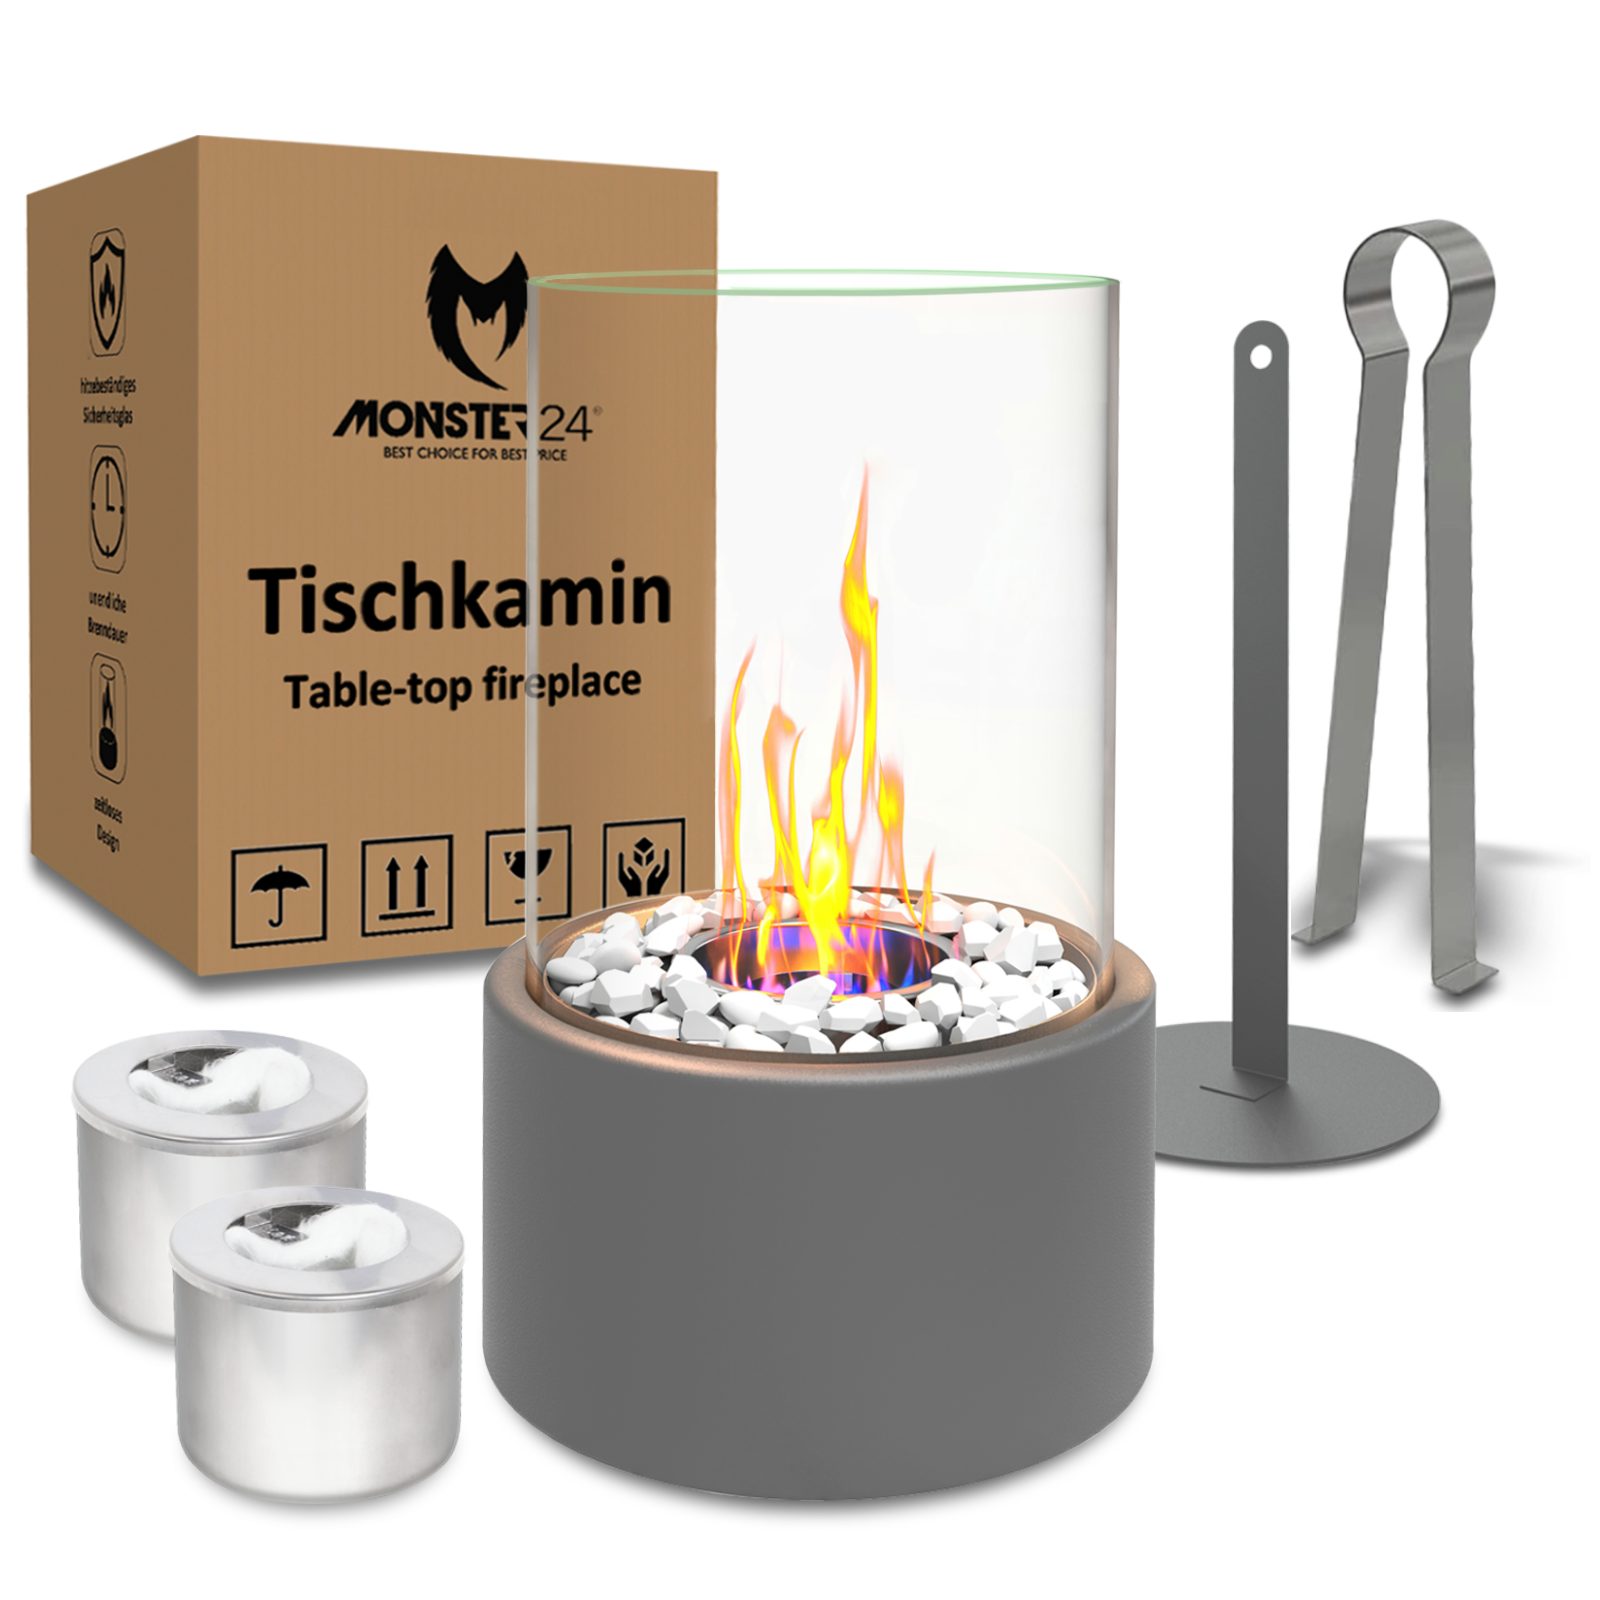 Monster24 Tischfeuer Bio-Ethanol Tischkamin für Indoor & Outdoor, Echtfeuer-Dekokamin (Höhe 26 cm / Durchmesser 16 cm) Grau